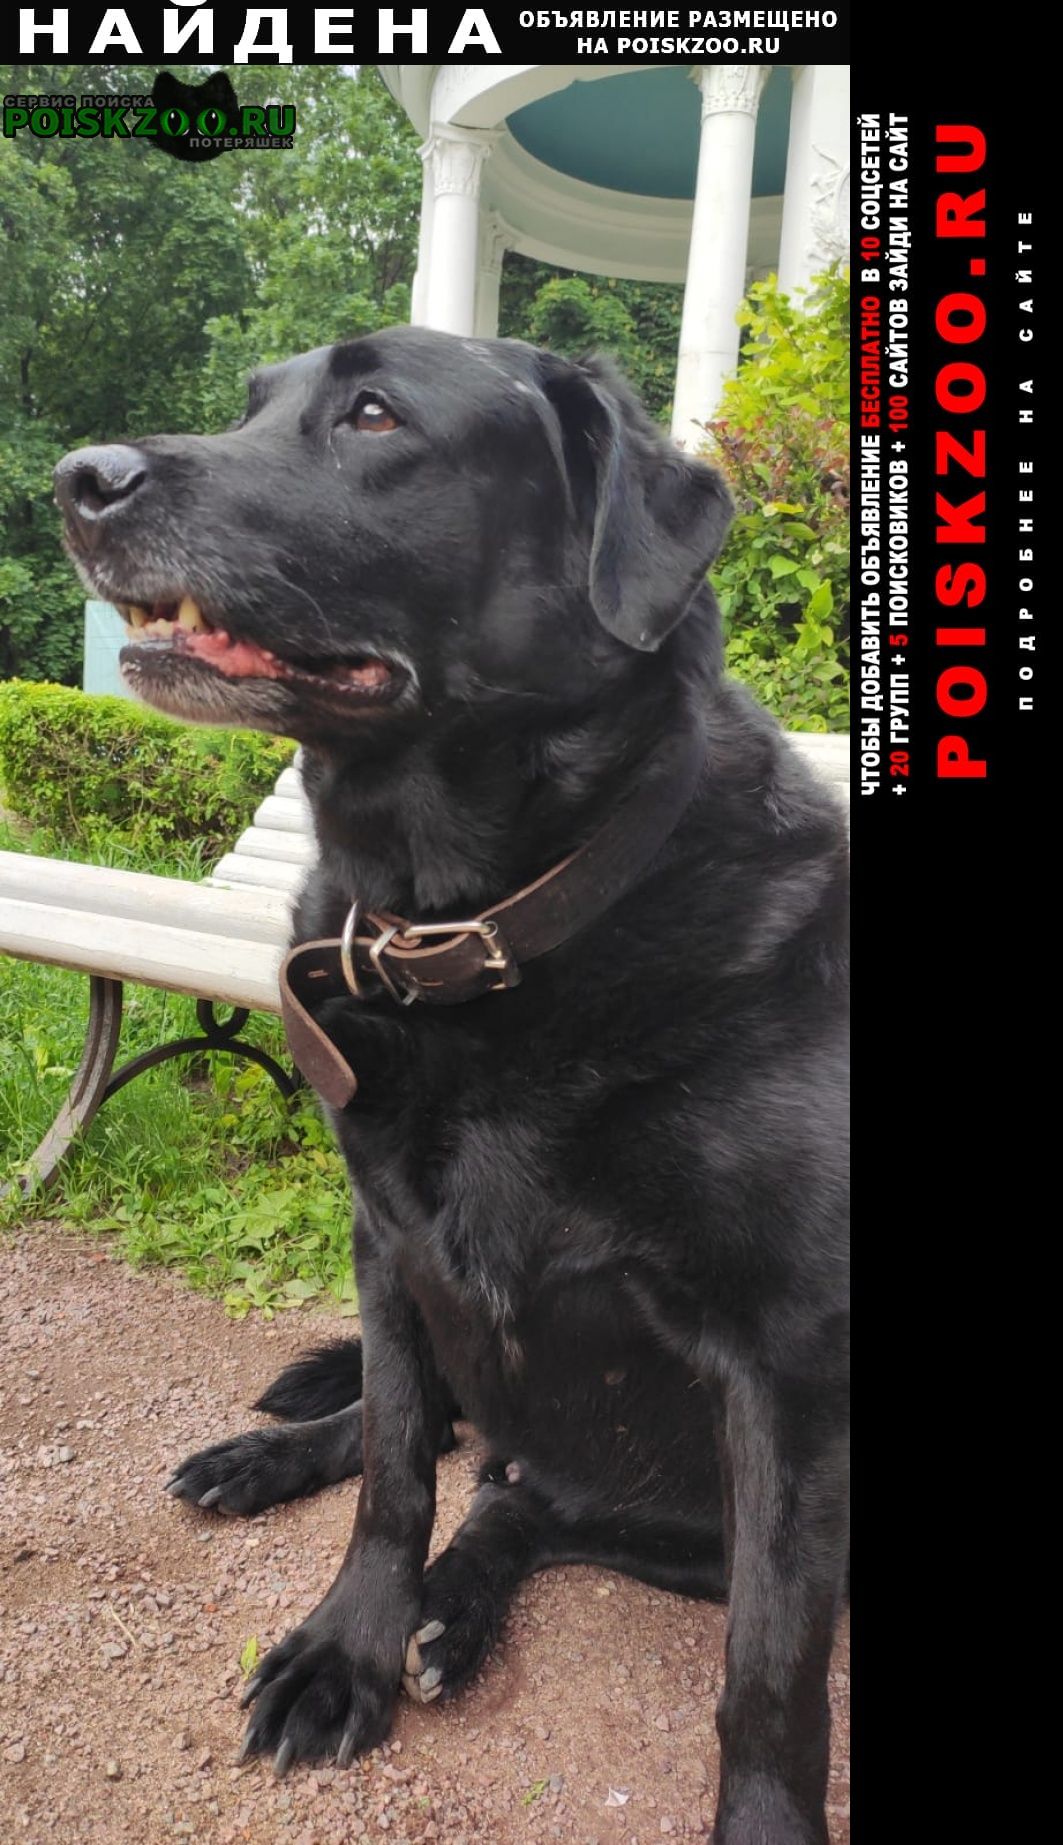 Найдена собака кобель чёрный лабрадор Москва